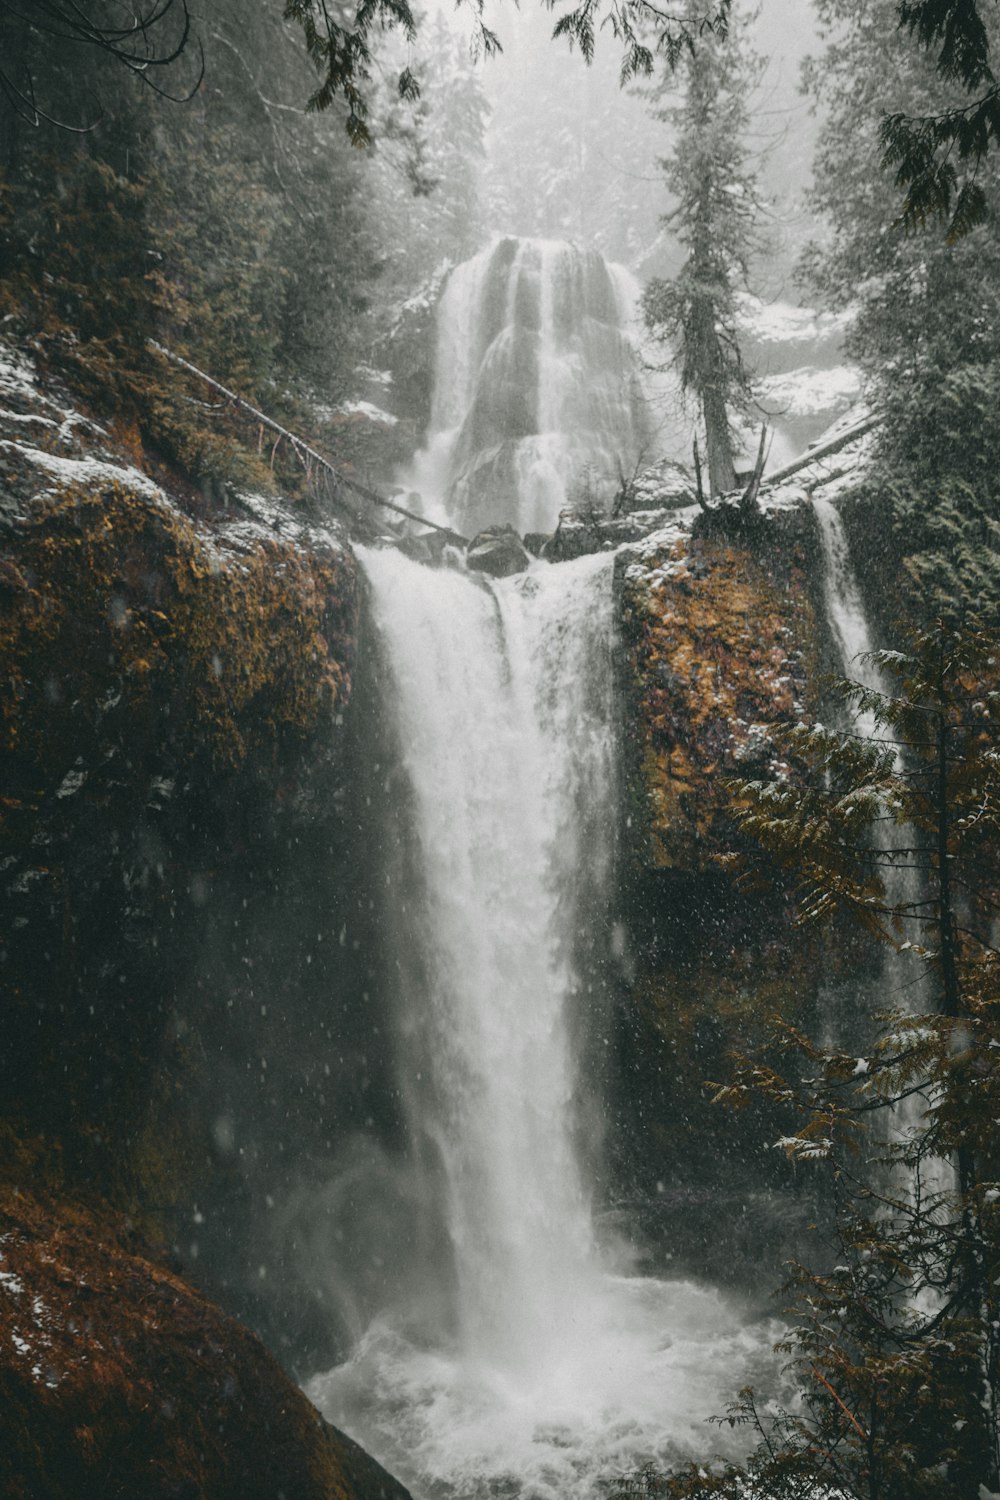 flowing waterfalls during daytime